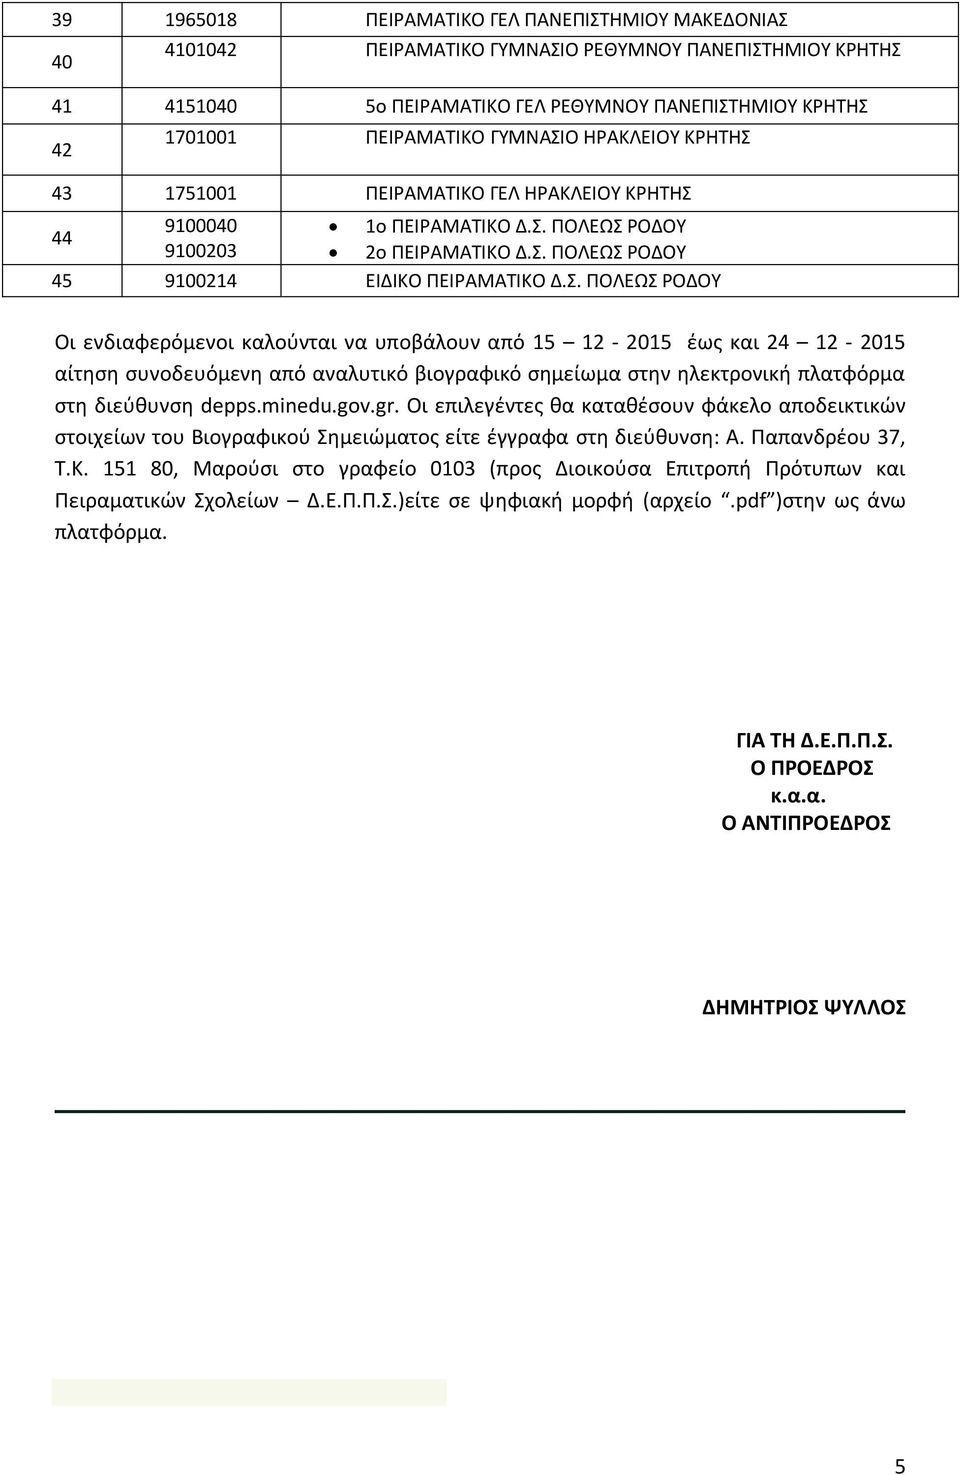 minedu.gov.gr. Οι επιλεγέντες θα καταθέσουν φάκελο αποδεικτικών στοιχείων του Βιογραφικού Σημειώματος είτε έγγραφα στη διεύθυνση: Α. Παπανδρέου 37, Τ.Κ.